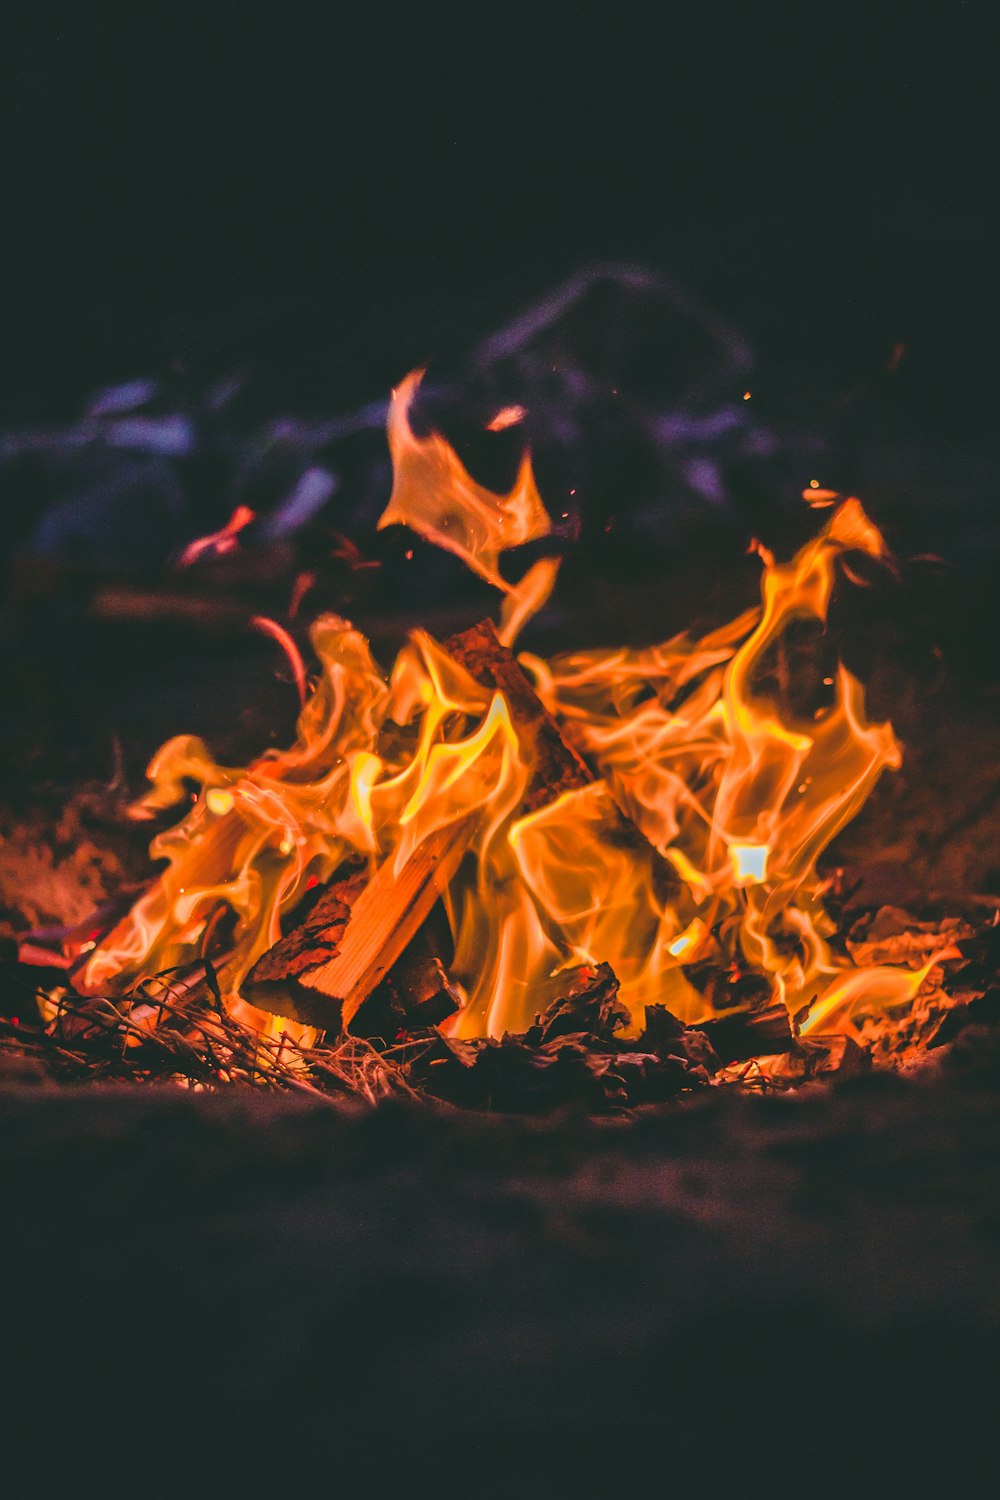 Brennendes Lagerfeuer in der Nacht